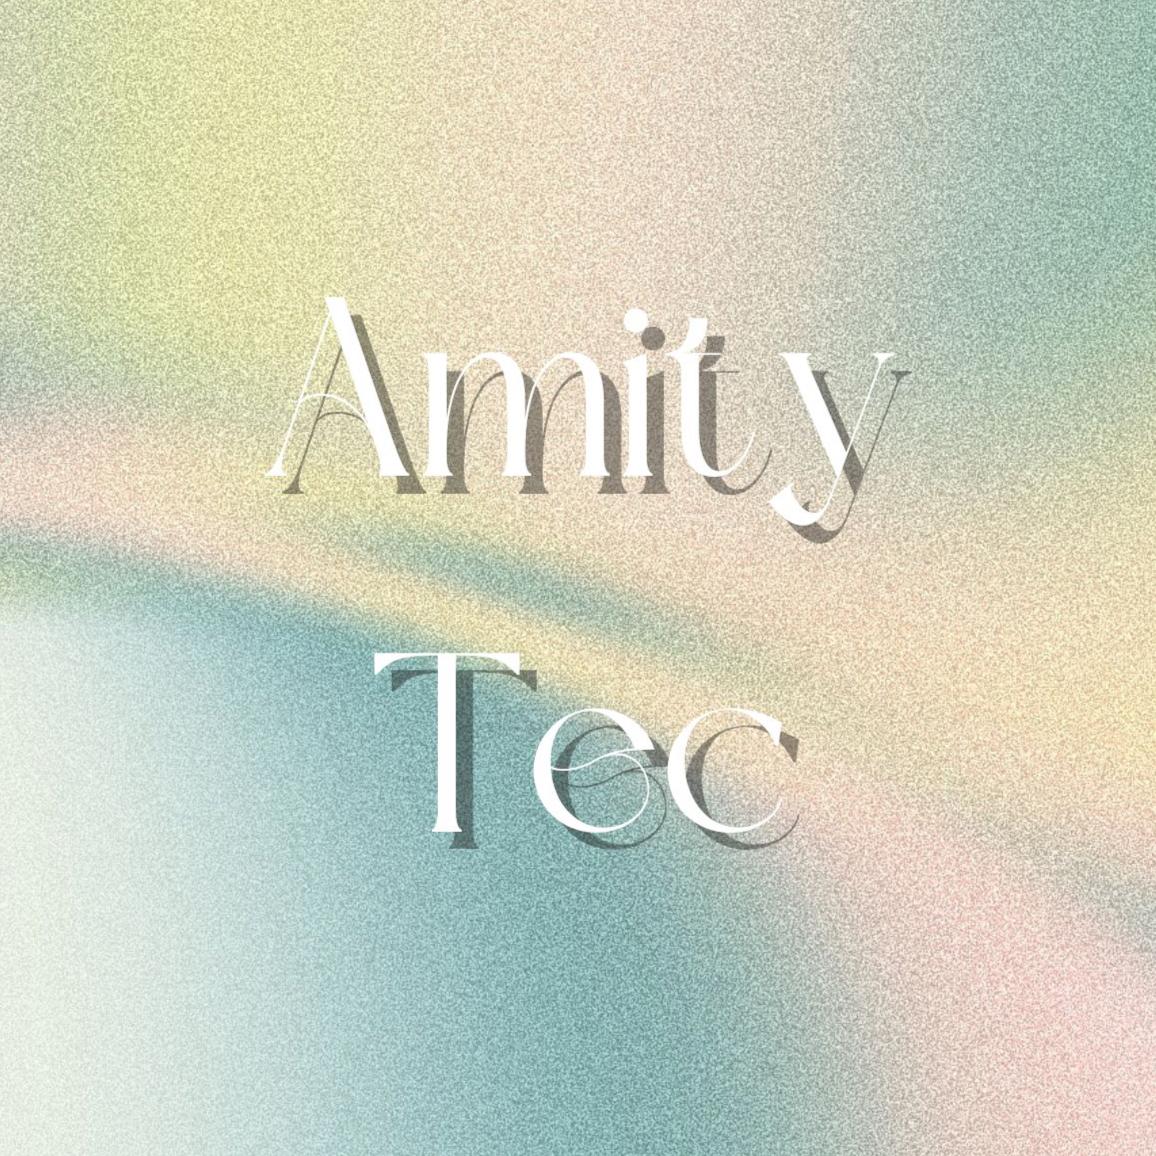 รูปภาพของ Amity.TEC